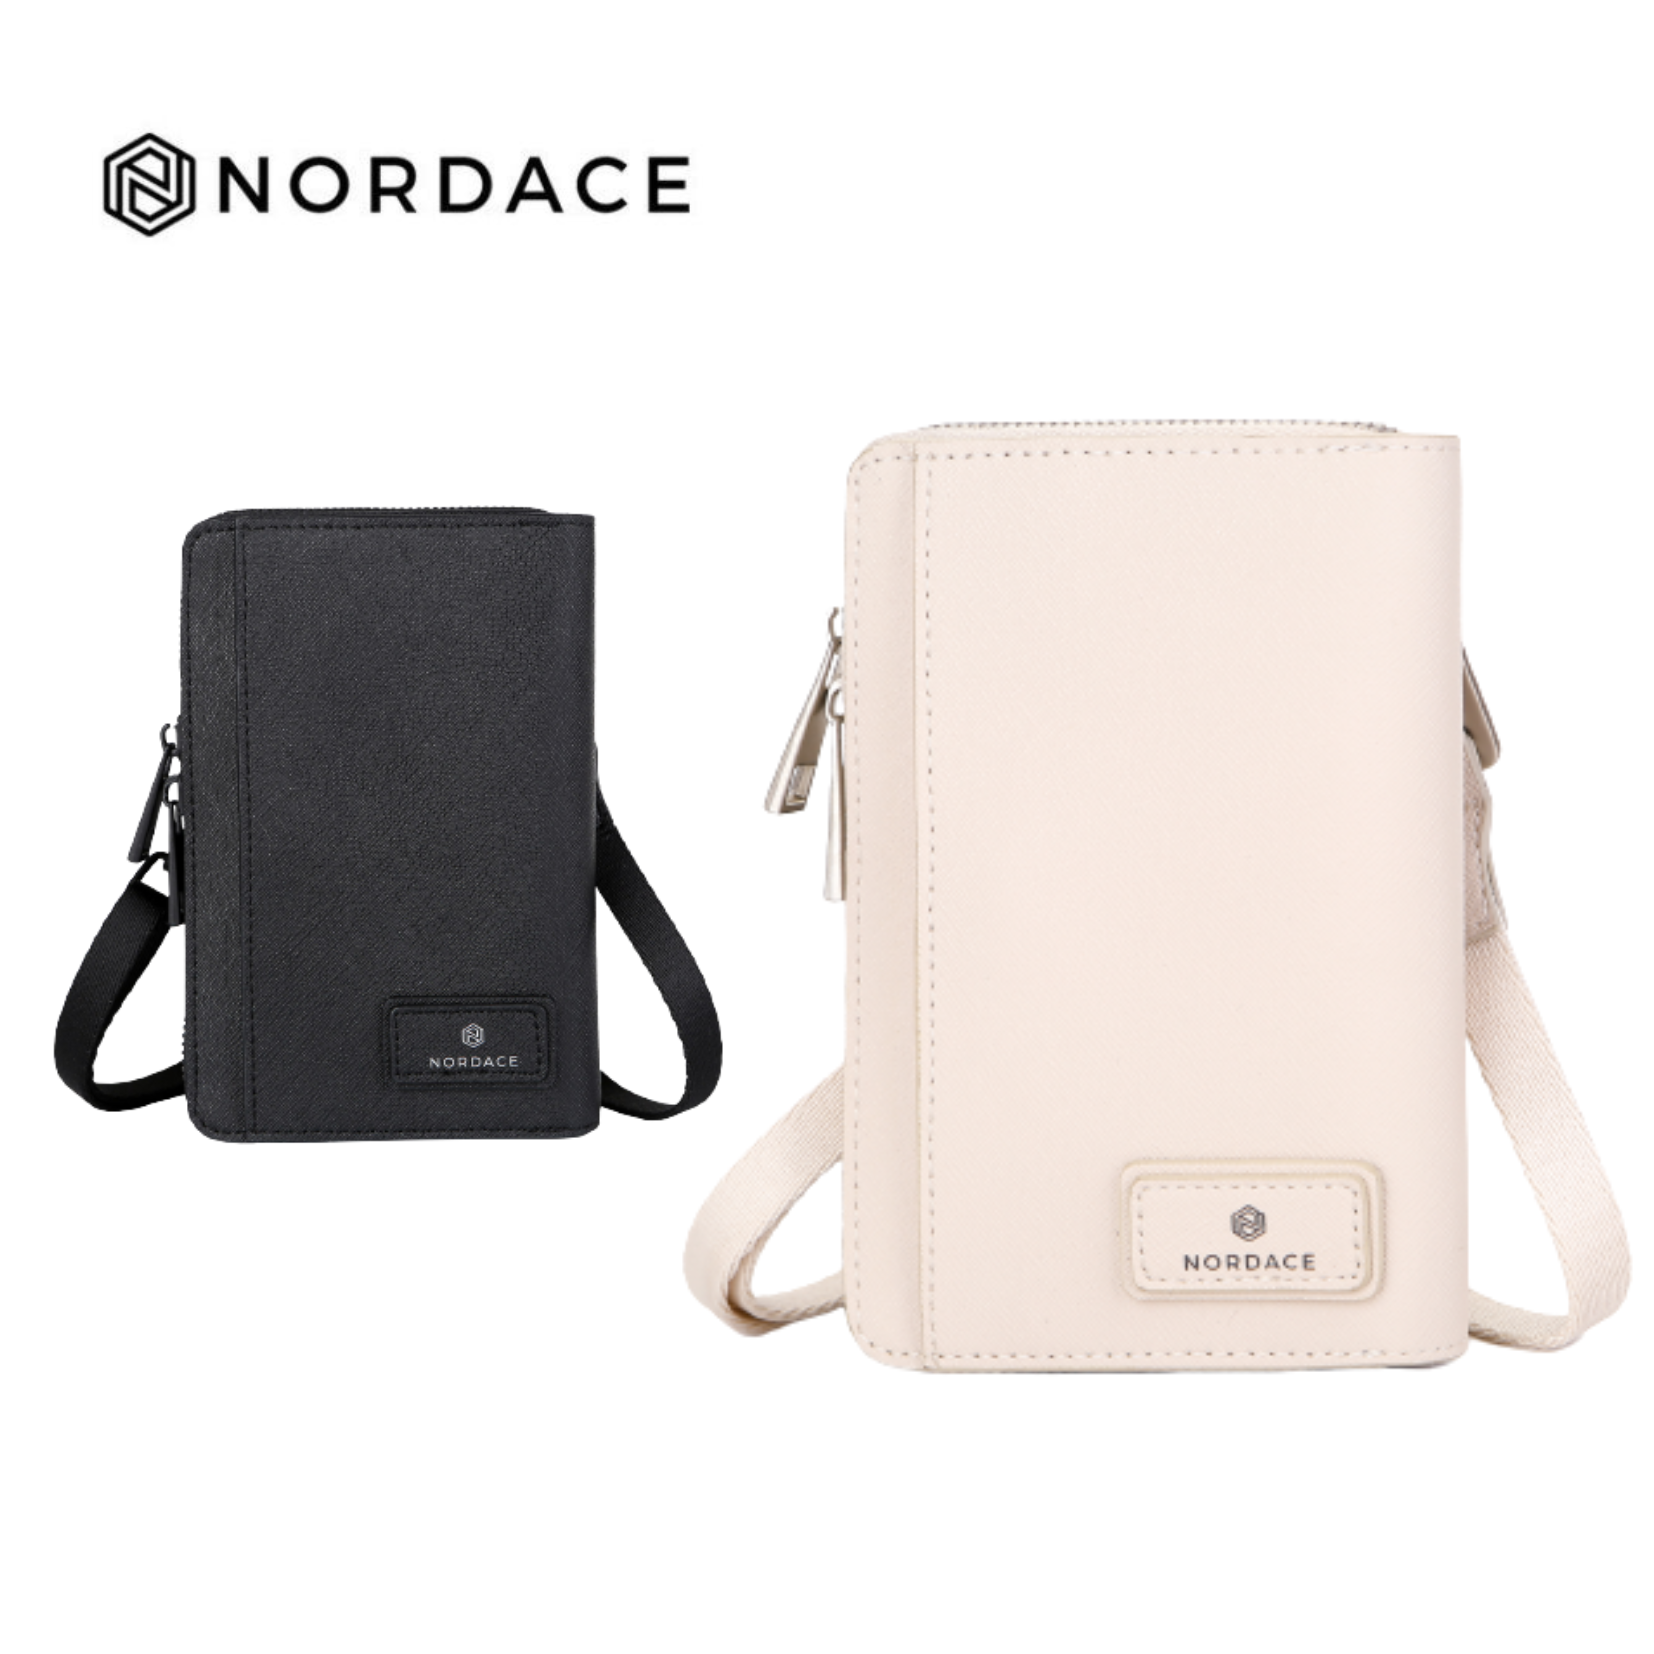 Nordace Siena II 護照包 護照夾 護照套 證件包 旅遊收納 隨身包 收納包 多功能 兩色可選-米色